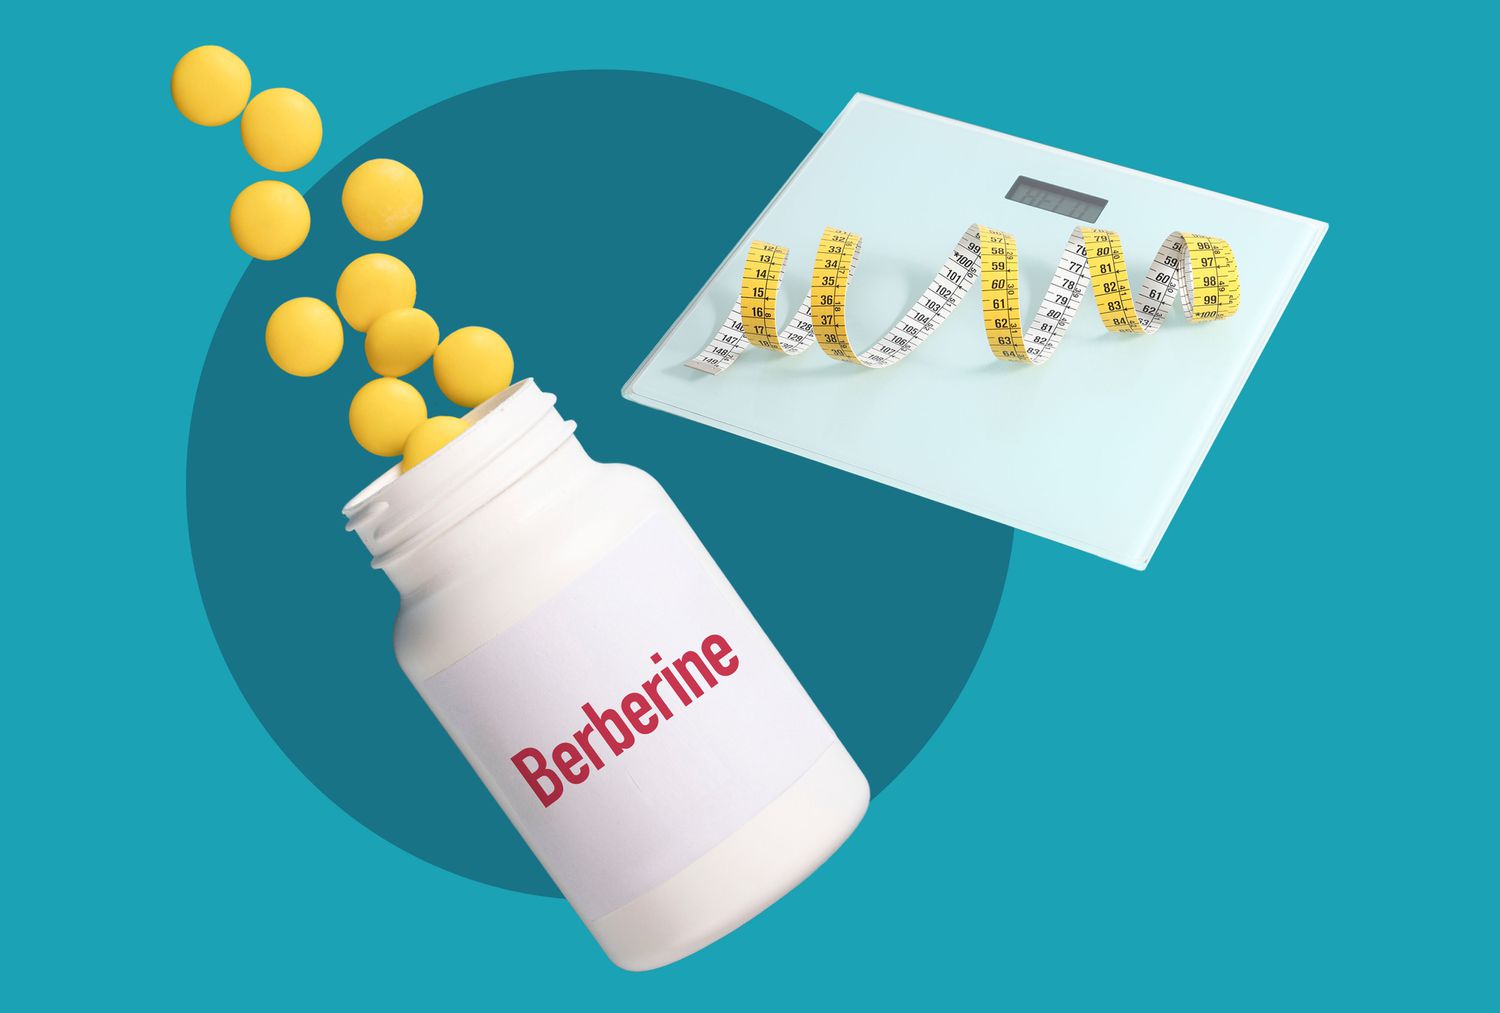 Berberine Supplements